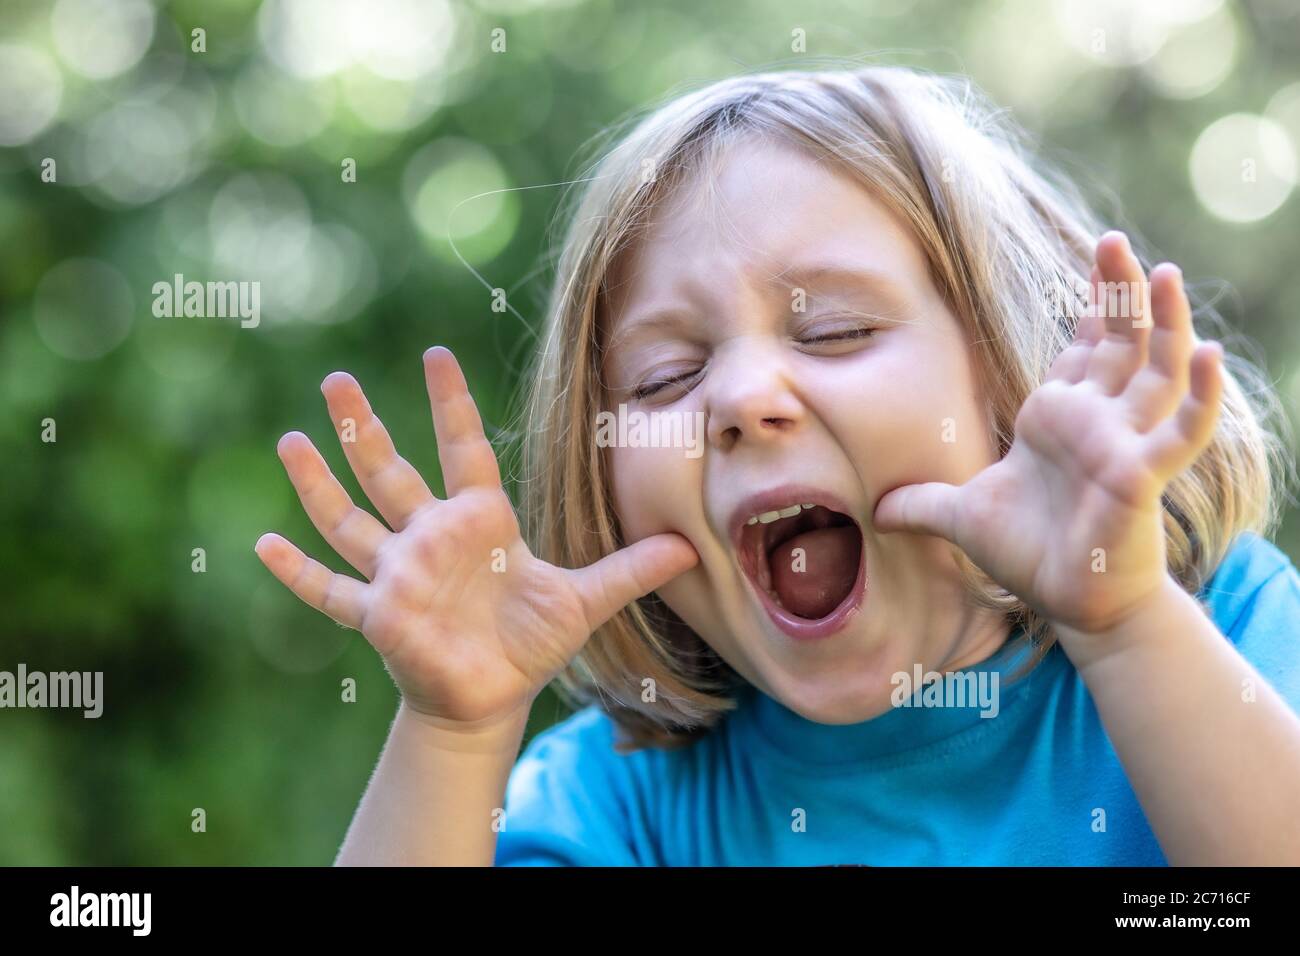 Portrait eines blonden Mädchens, das ein lustiges und lustiges Gesicht macht. Kindheit und Glück Konzept. Stockfoto